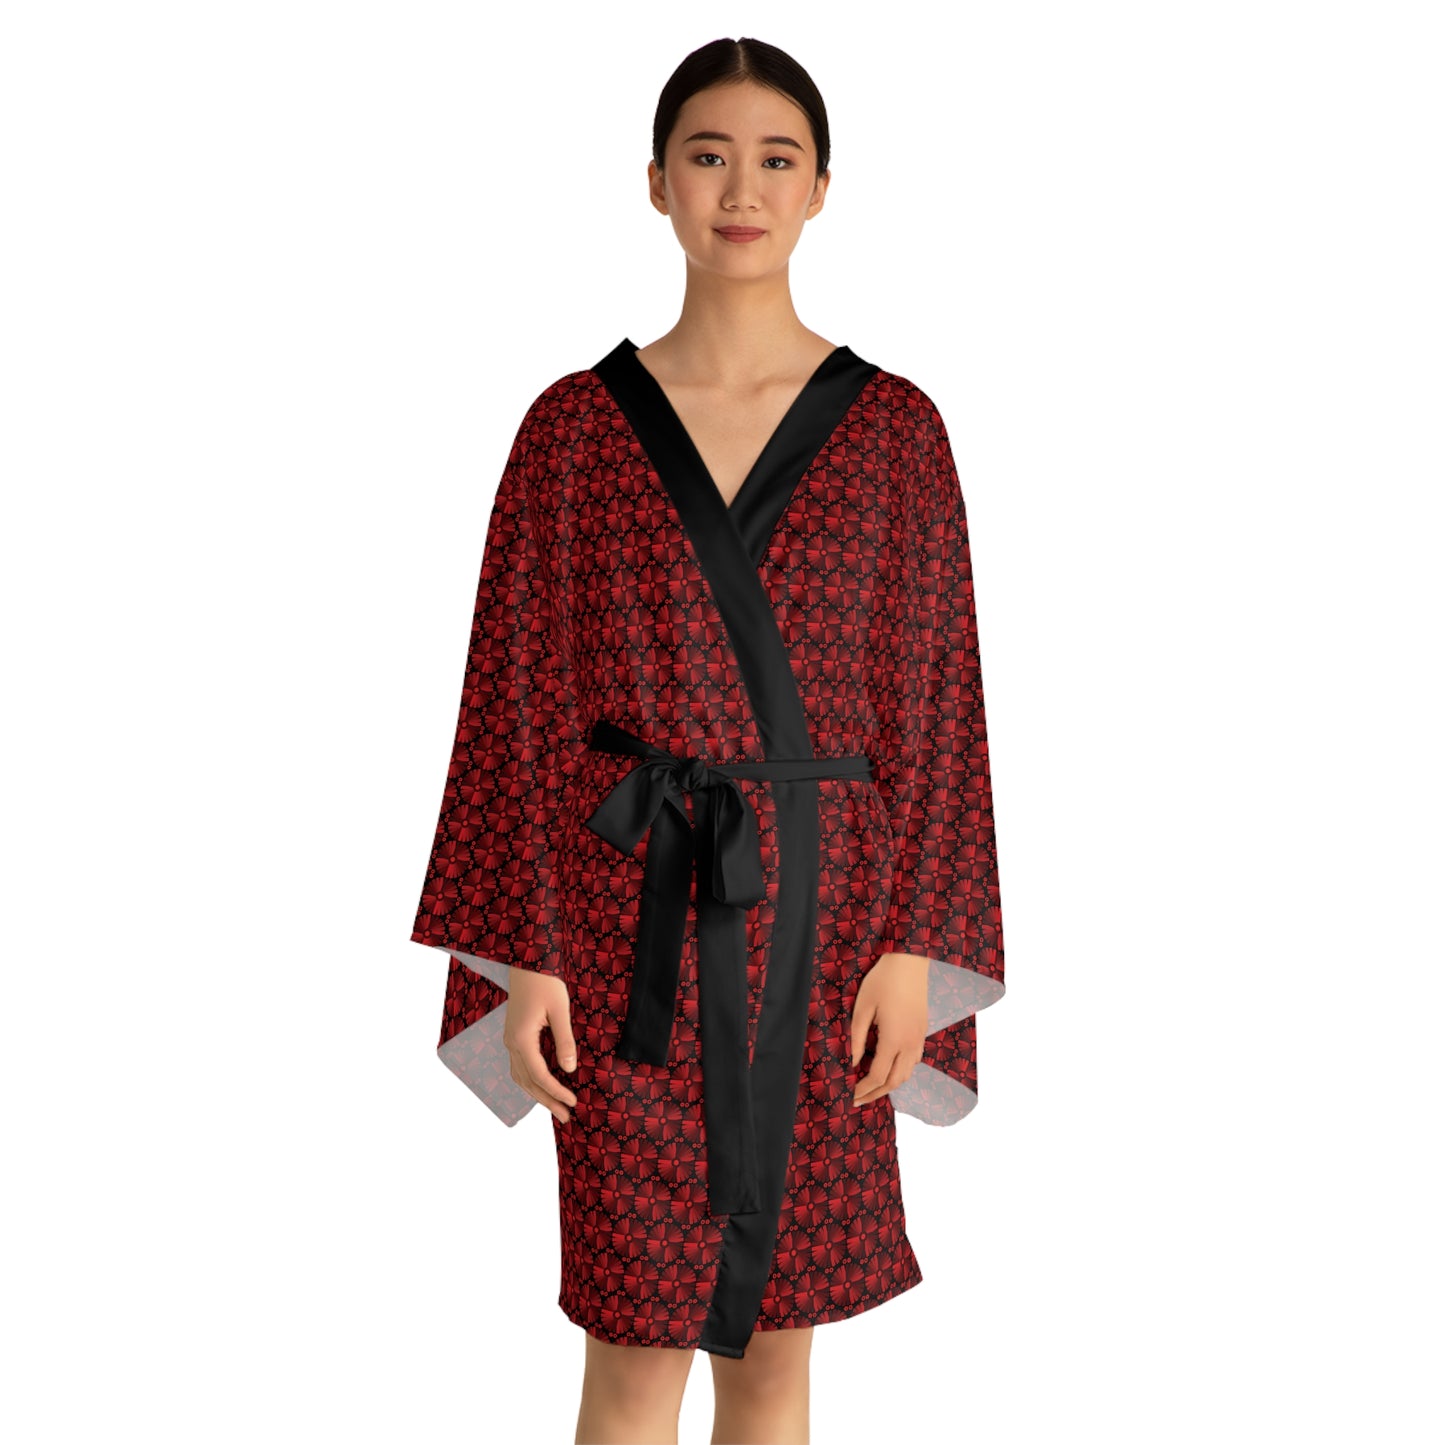 Letter Art - I - Red - Black 000000 - Long Sleeve Kimono Robe (AOP)